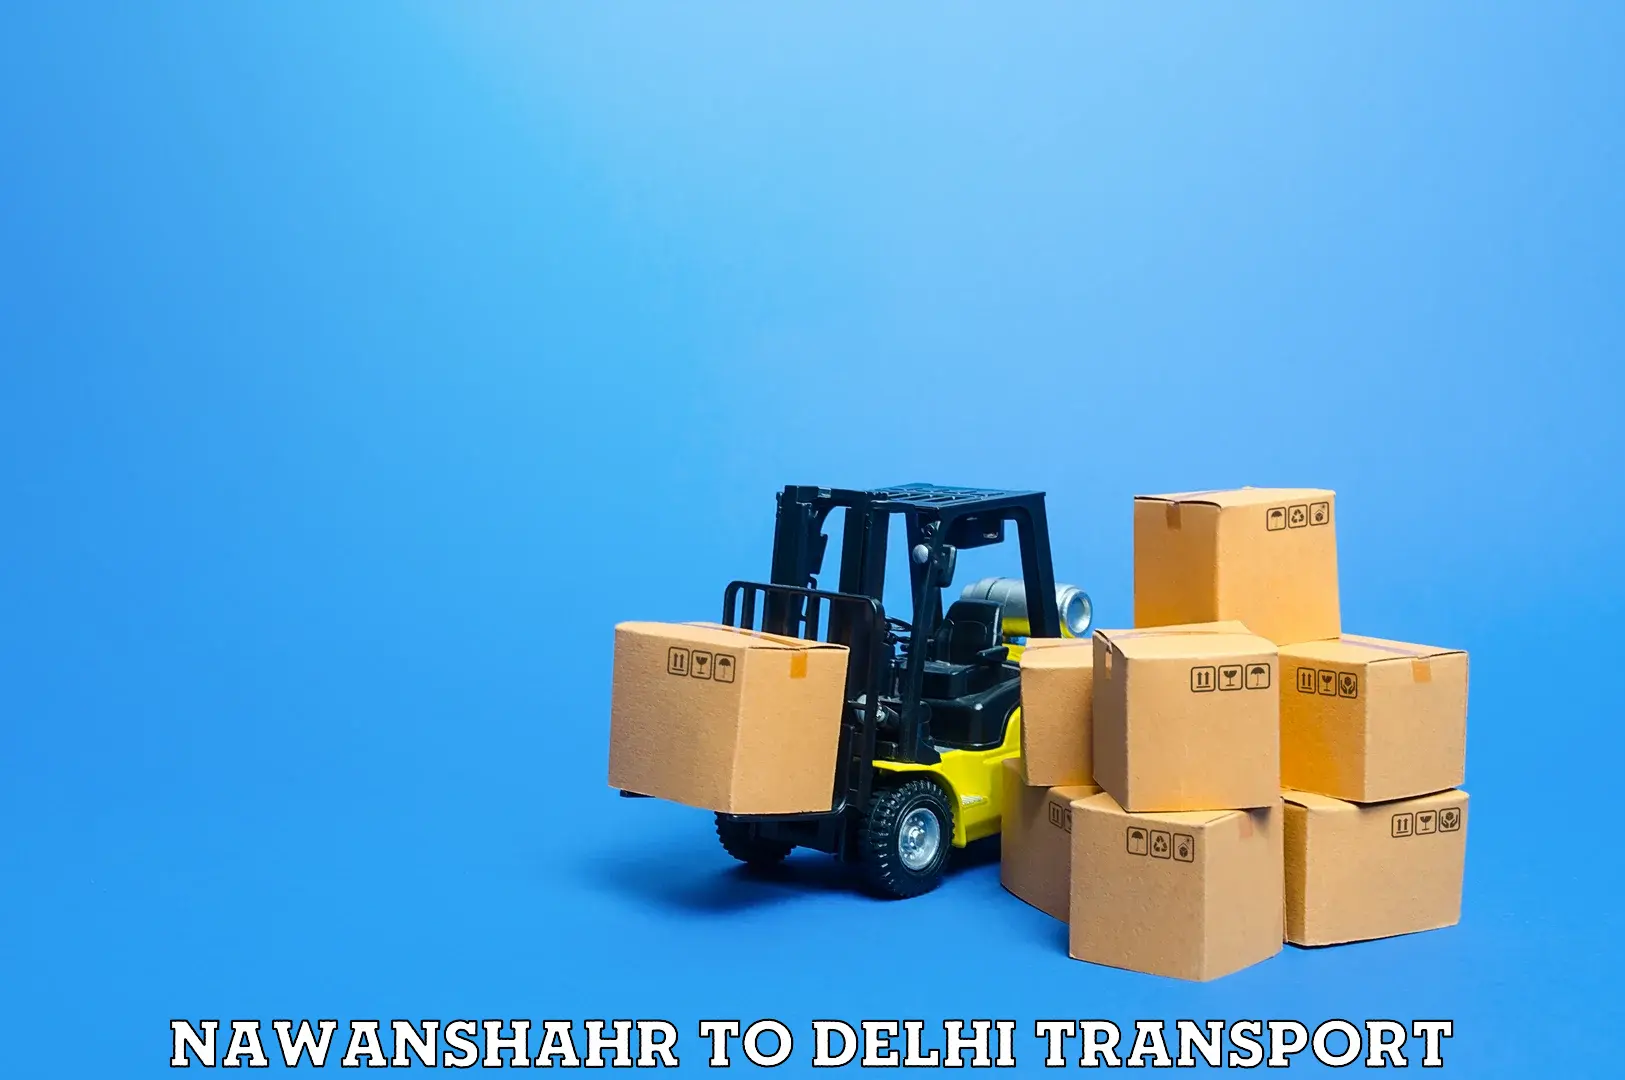 Pick up transport service Nawanshahr to Guru Gobind Singh Indraprastha University New Delhi